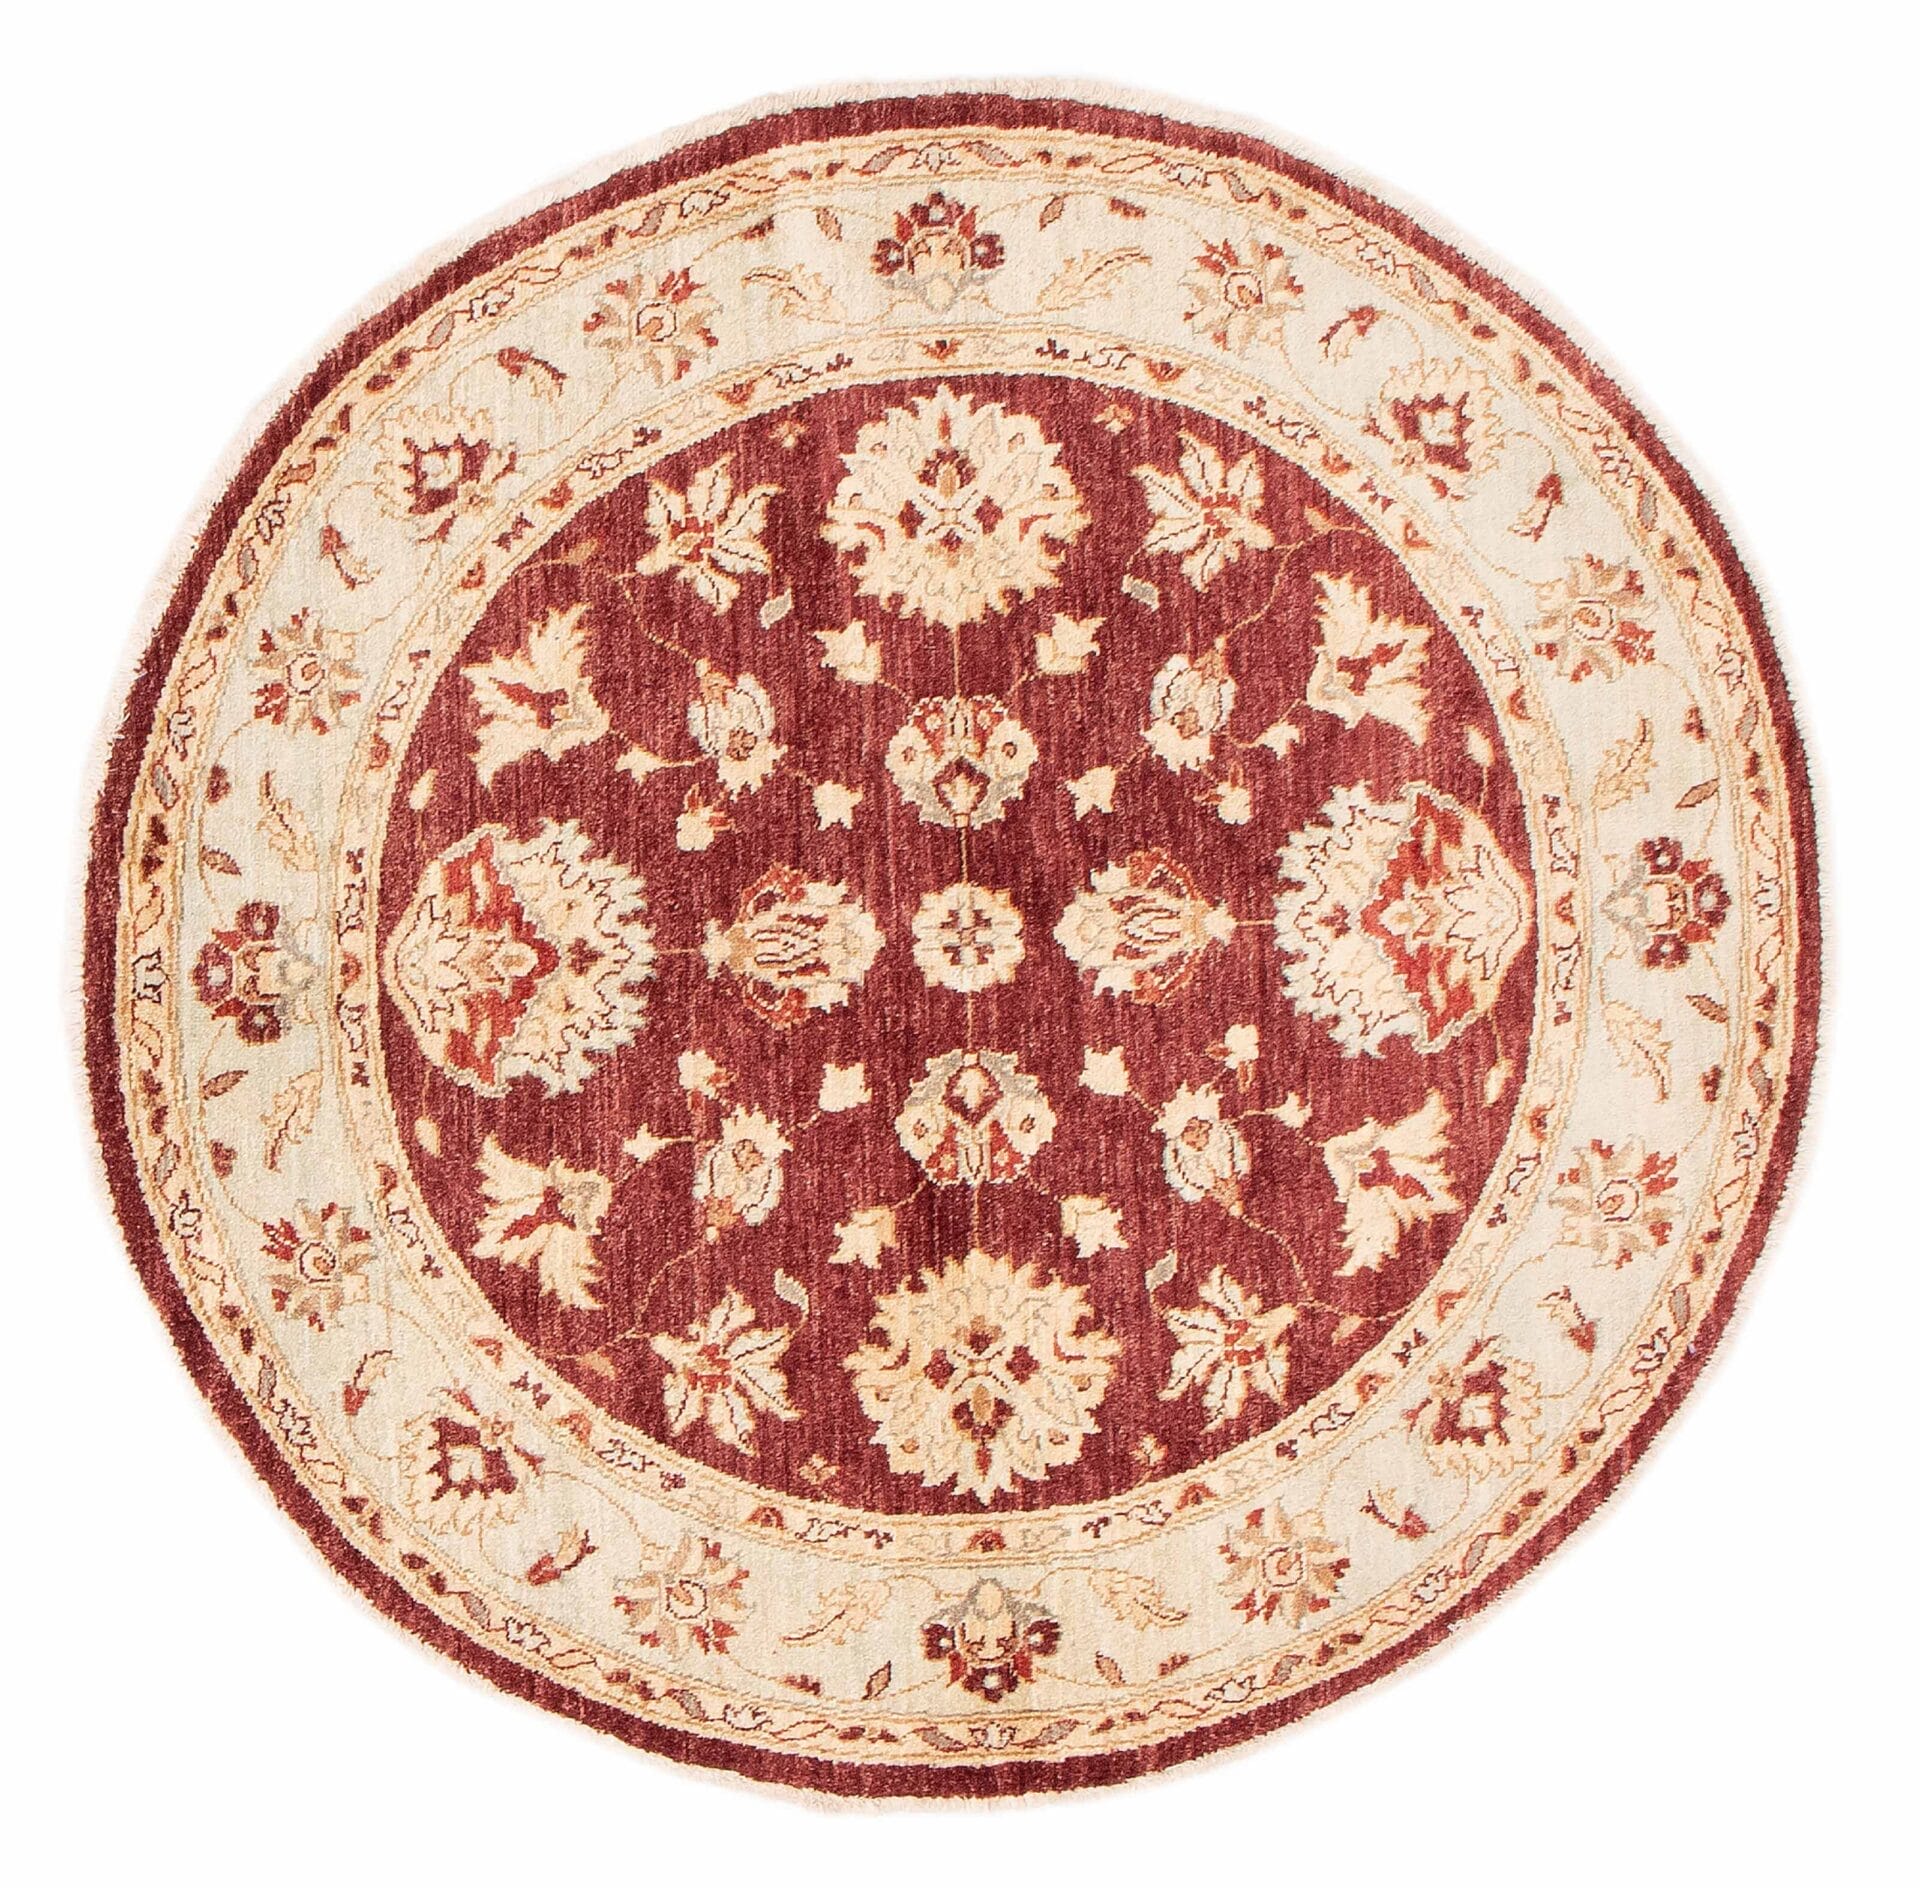 Beschrijving: Een rond tapijt met een rood en beige bloemmotief.